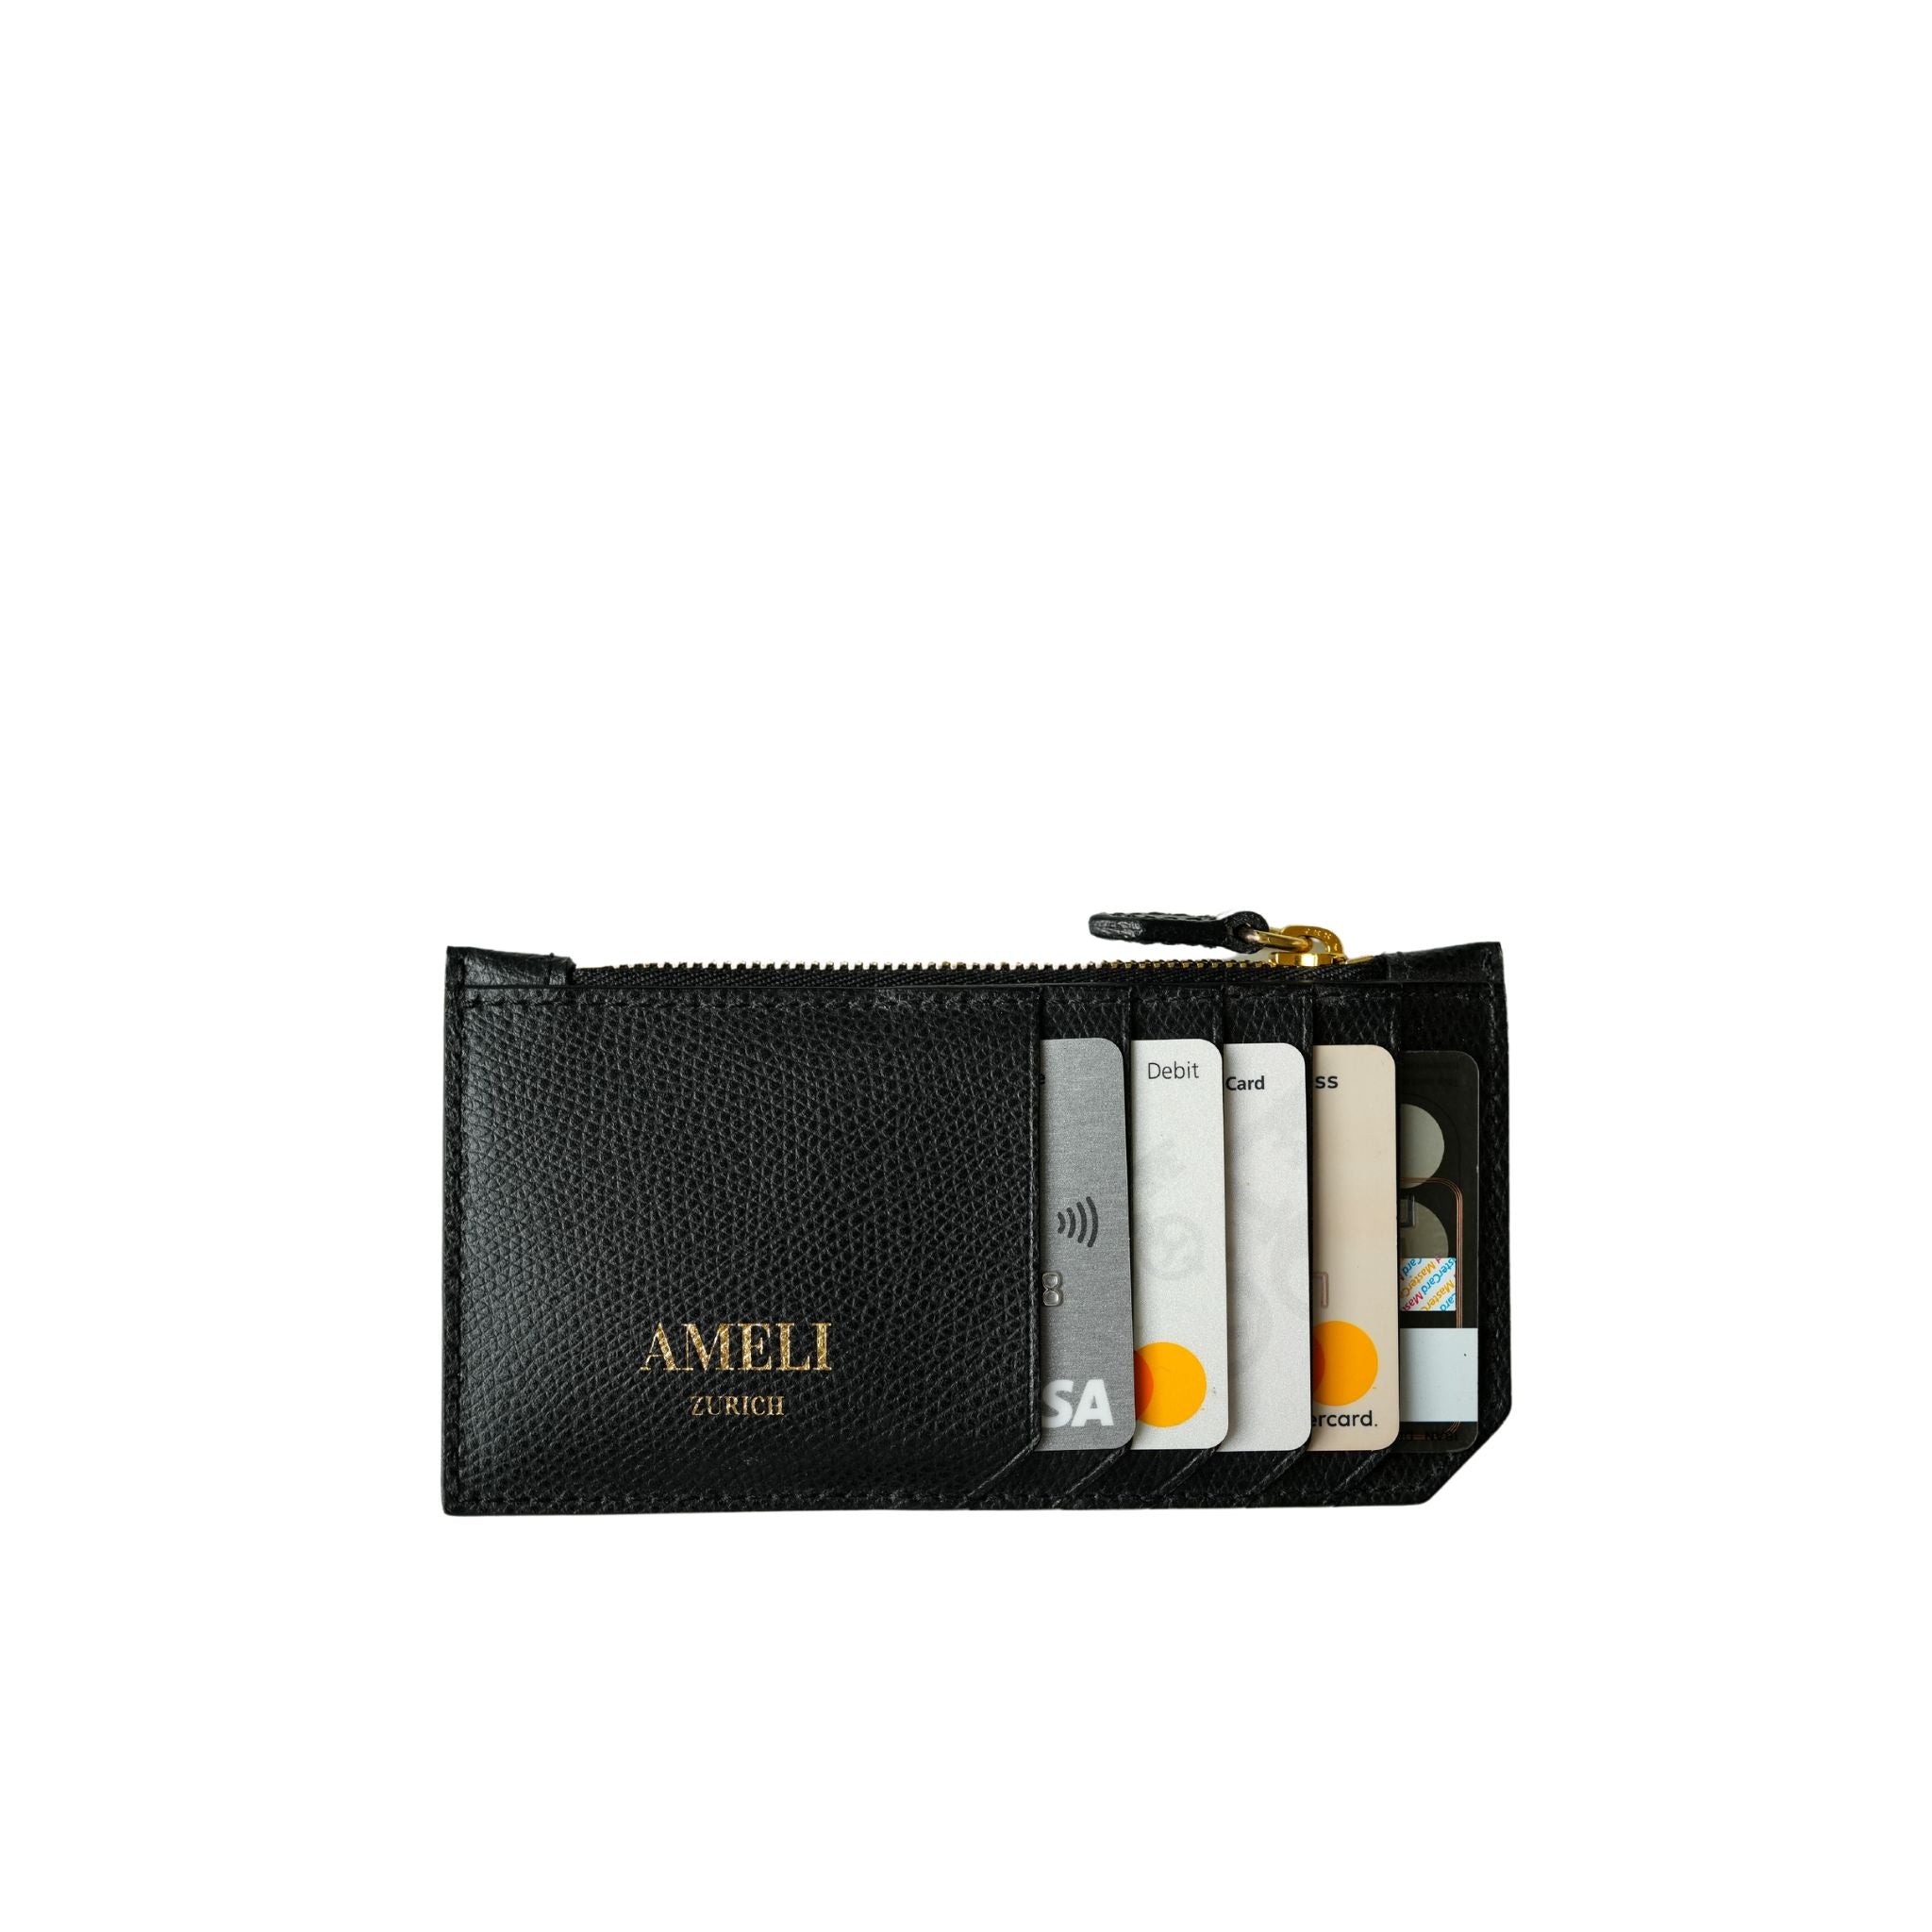 AMELI Zurich | Card holder | Black | Pebbled Leather | Front